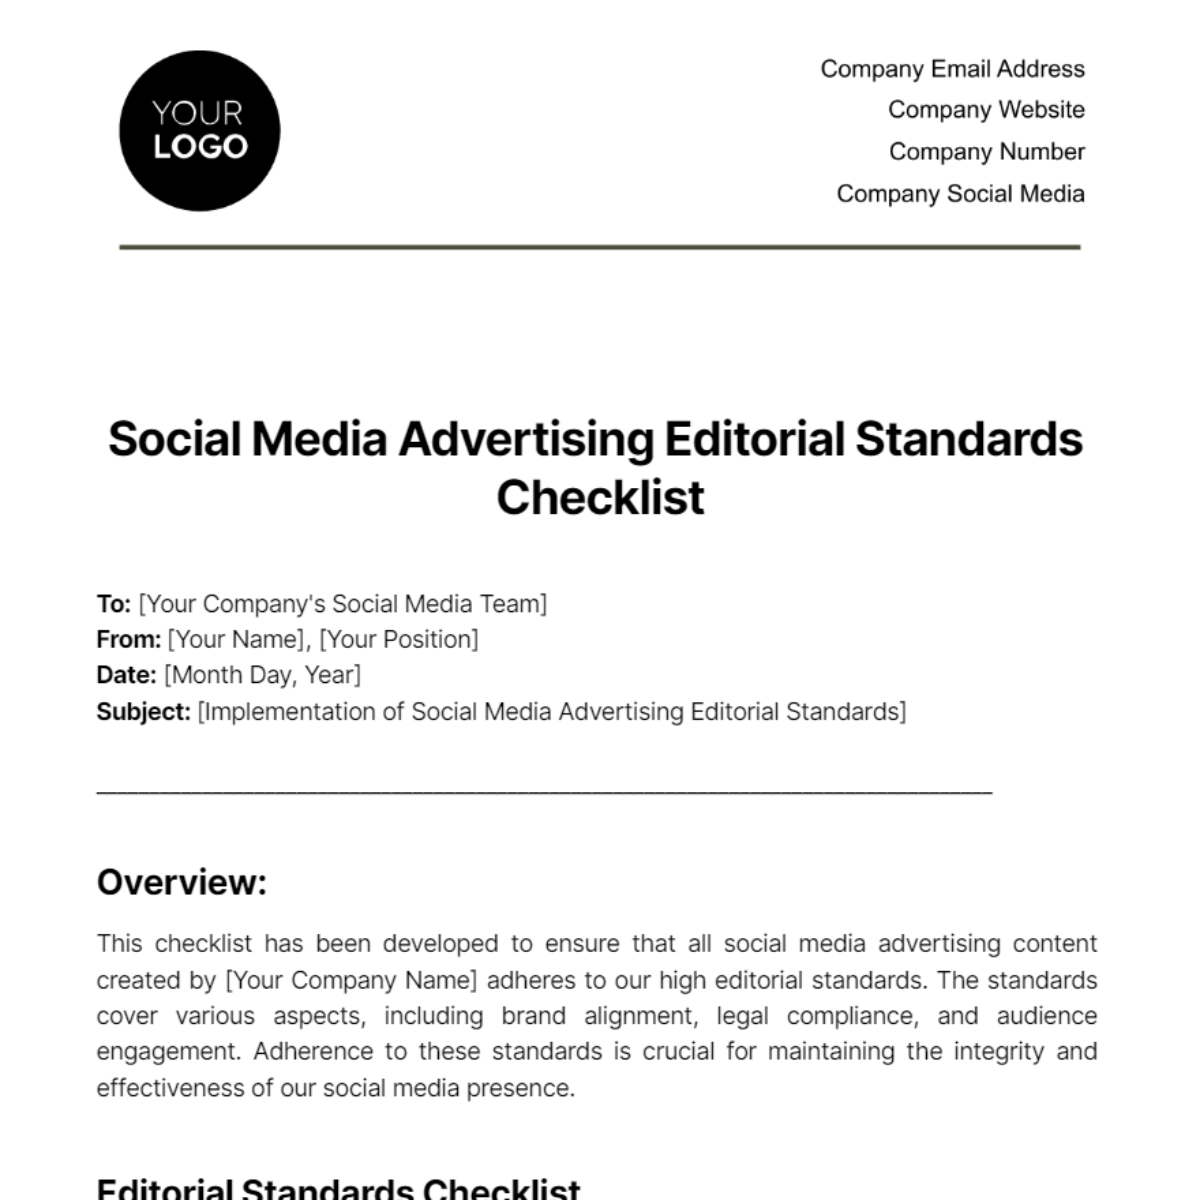 Social Media Advertising Editorial Standards Checklist Template